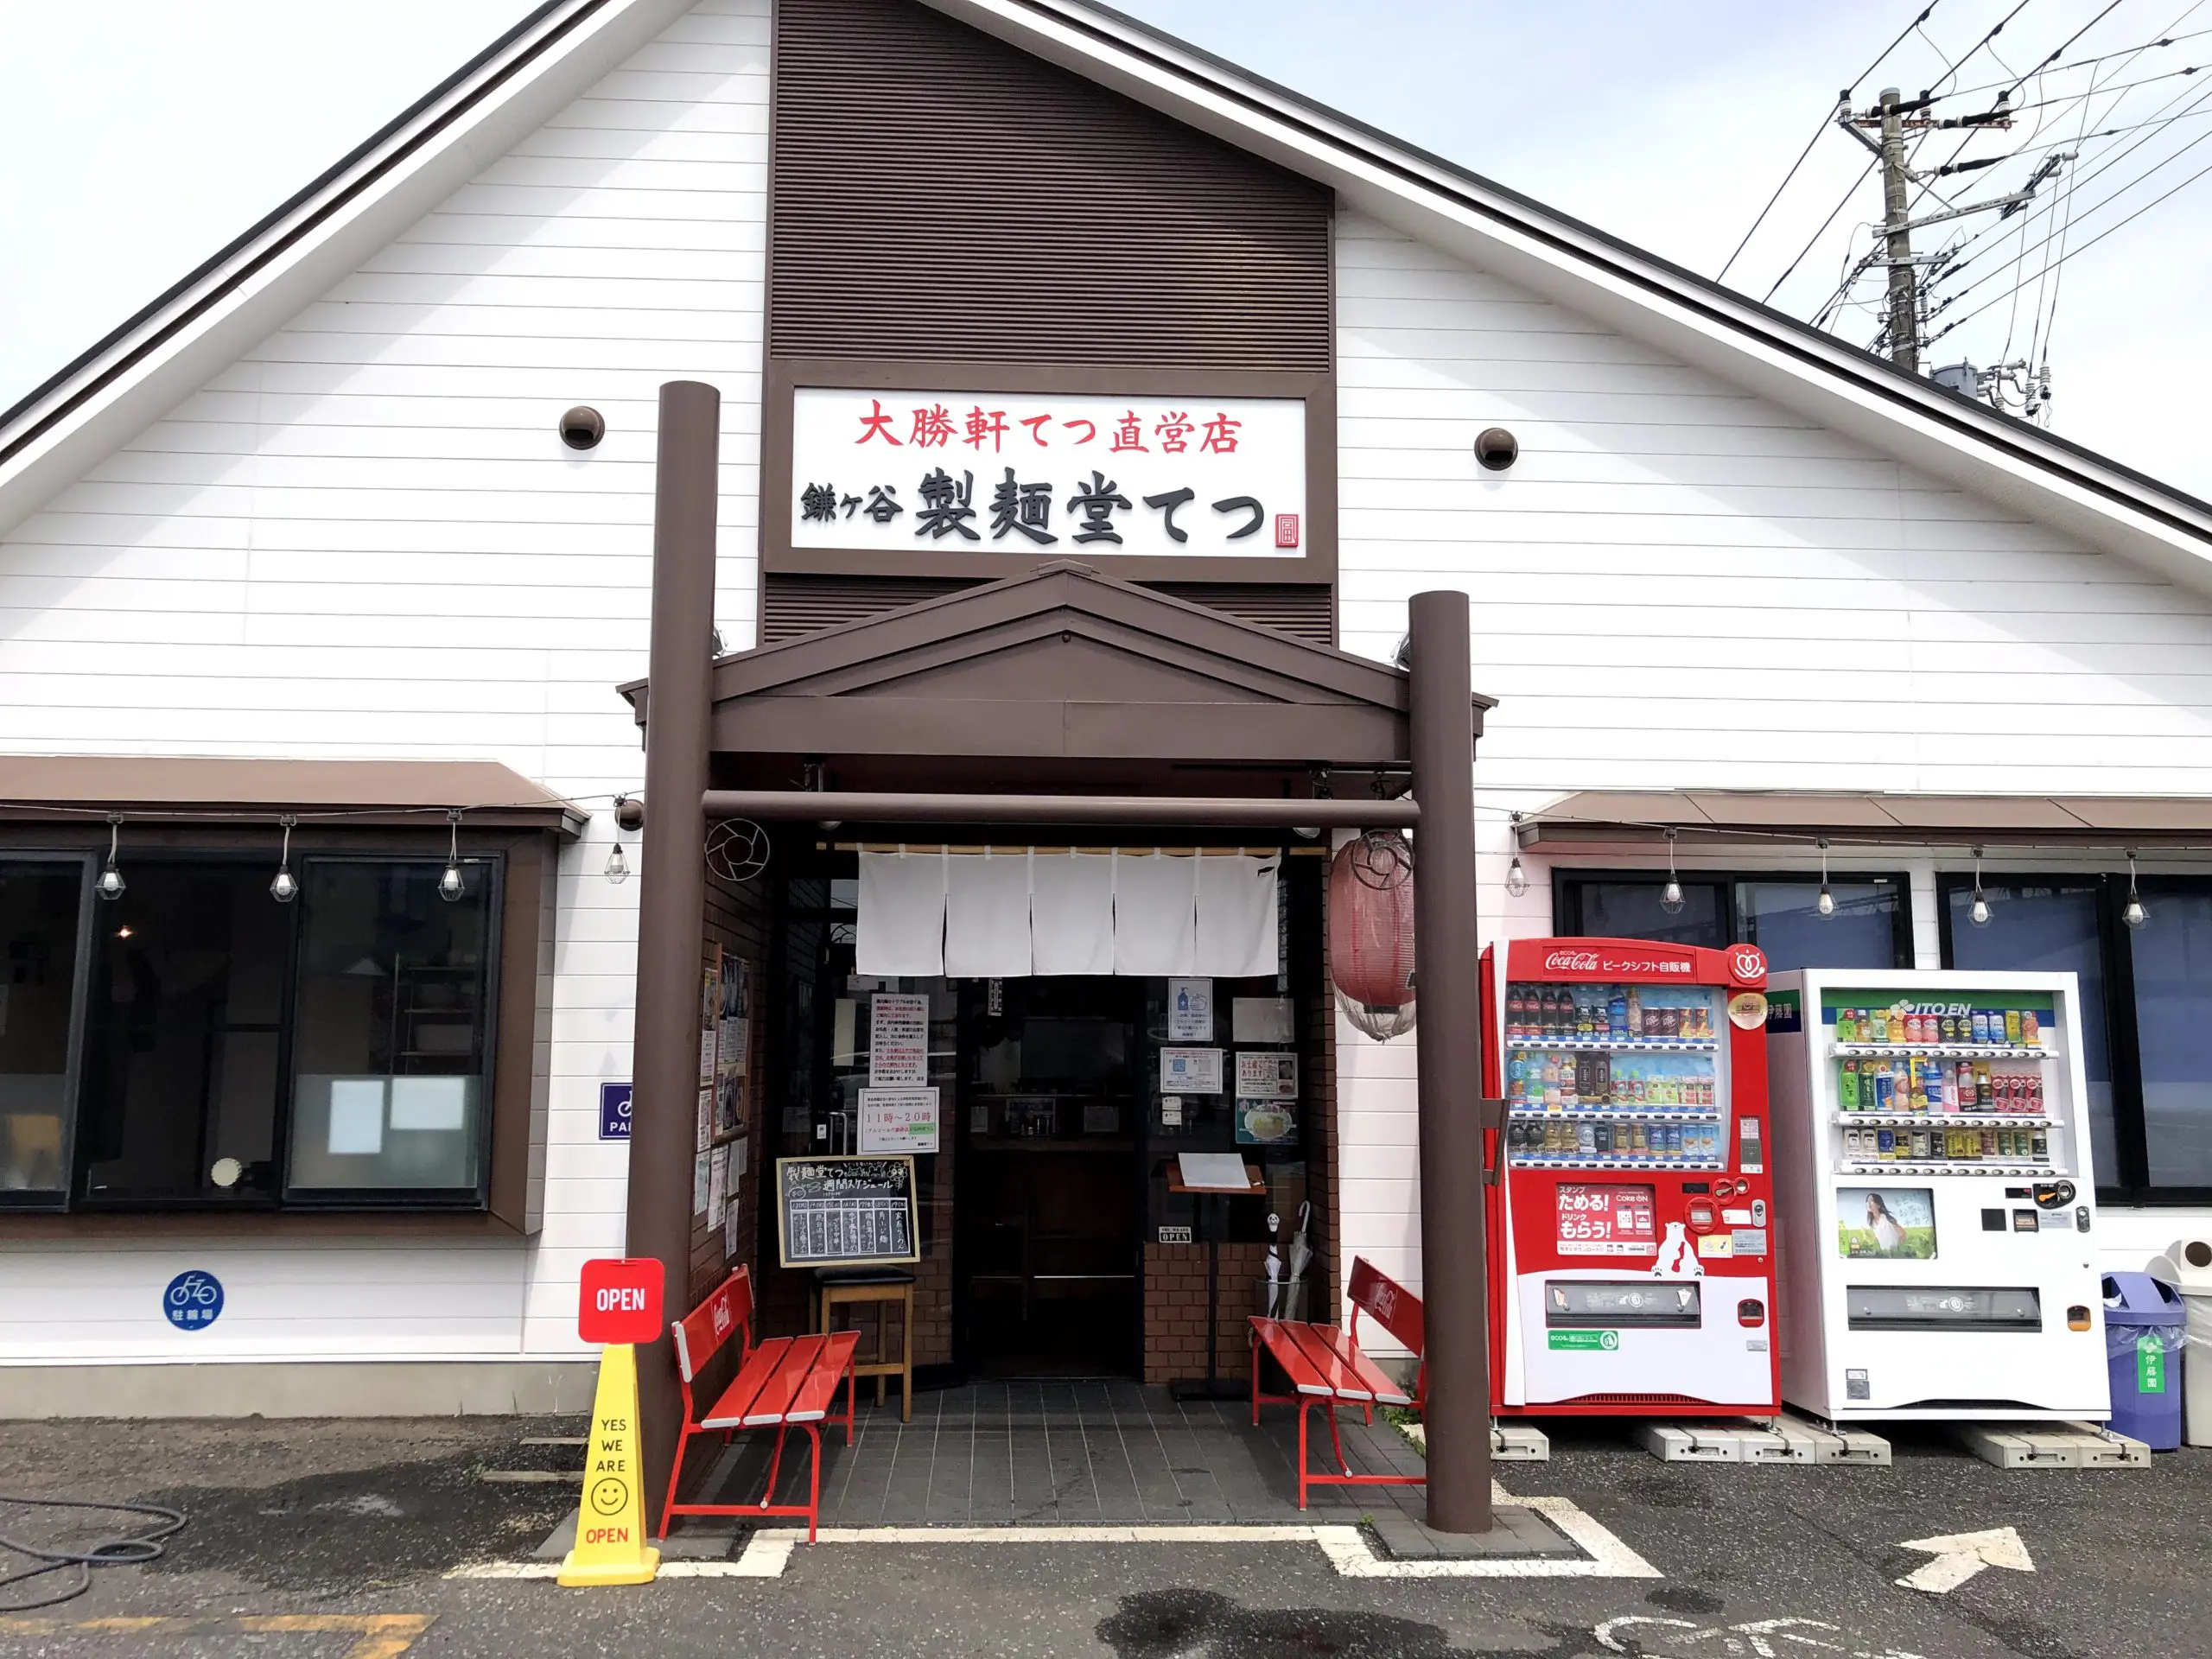 柏の 大勝軒てつ の2号店 鎌ヶ谷製麺堂てつ に初訪問